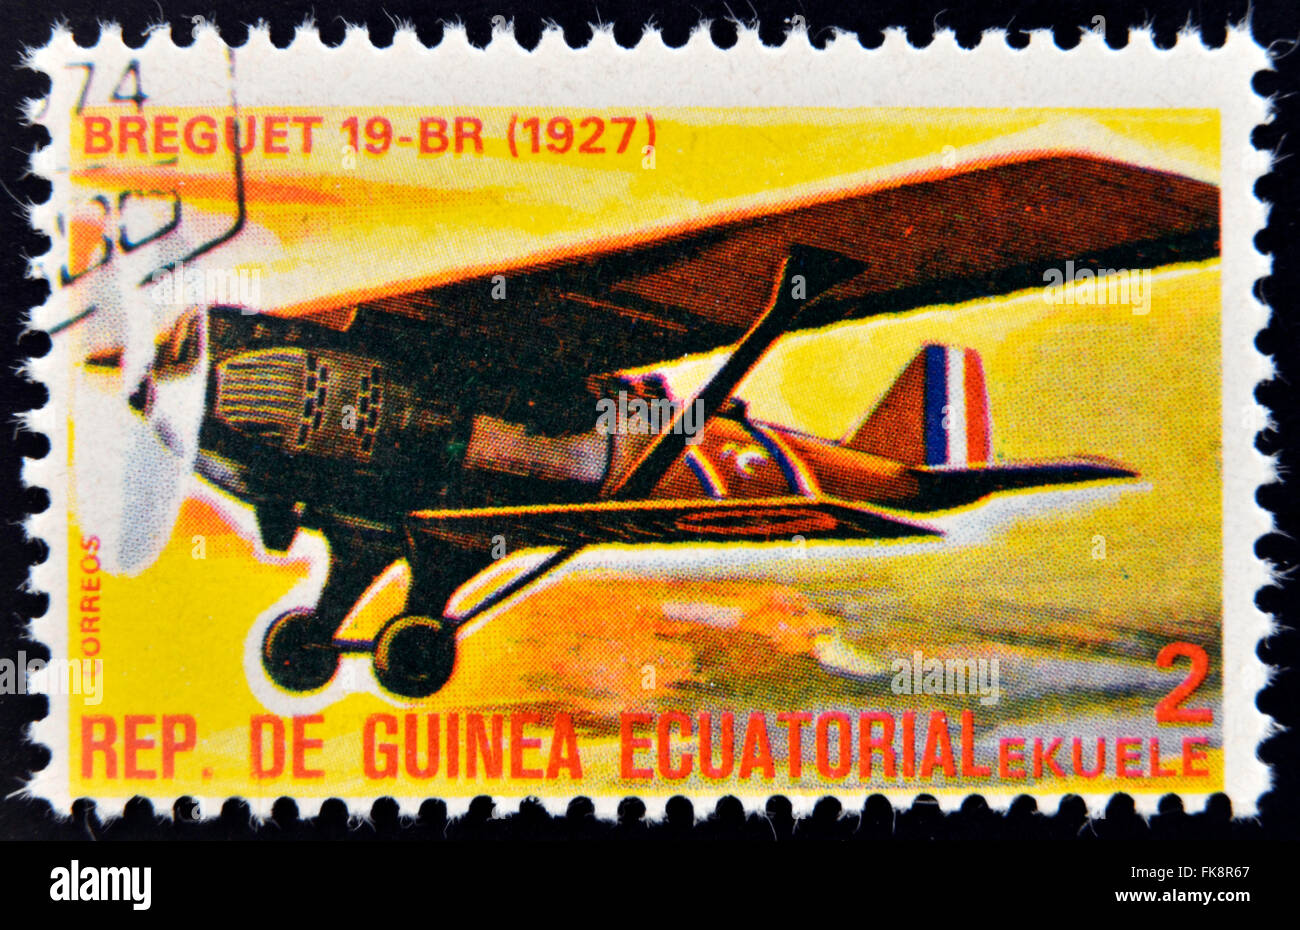 Guinée Équatoriale - circa 1974 : timbre imprimé en Guinée dédié à l'histoire de l'aviation montre Breguet 19-BR,1927, circa 1974 Banque D'Images